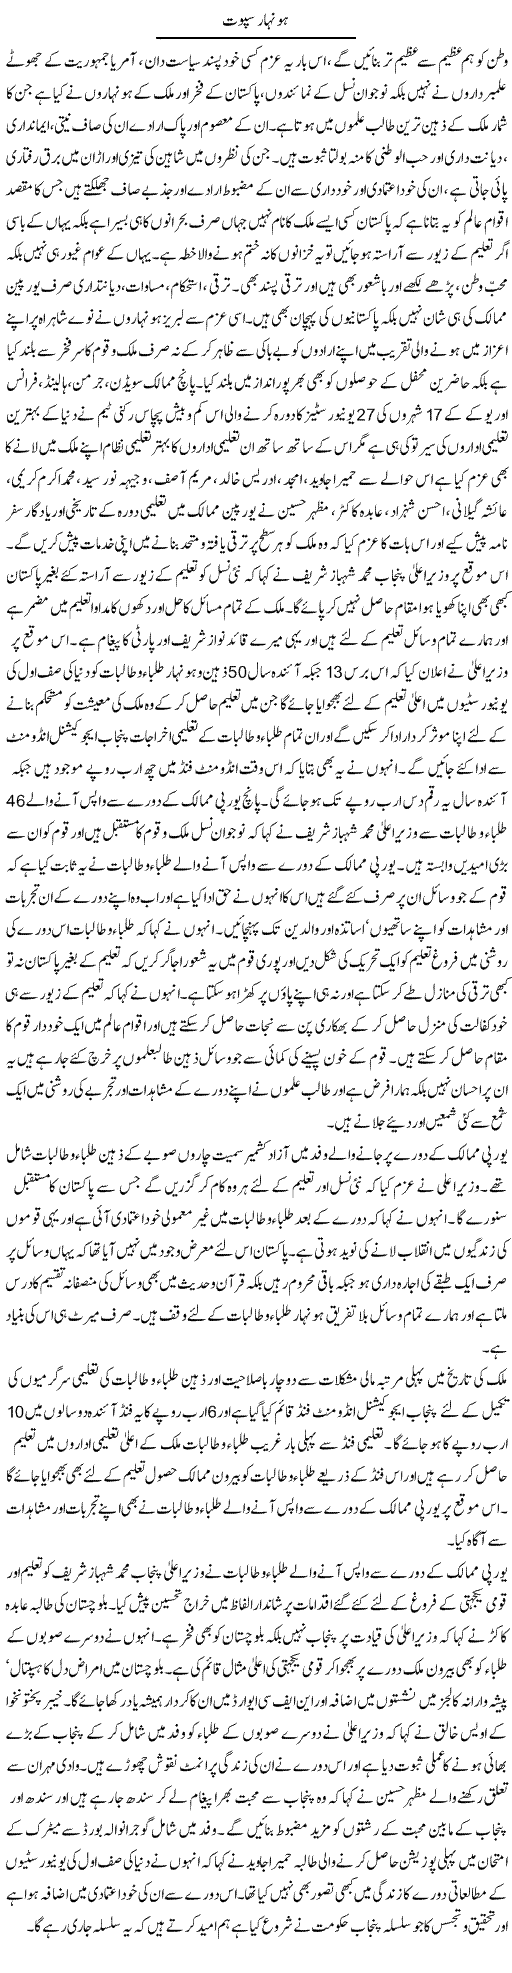 Honihar Sapoot Express Column Yousaf Abbasi 26 July 2010